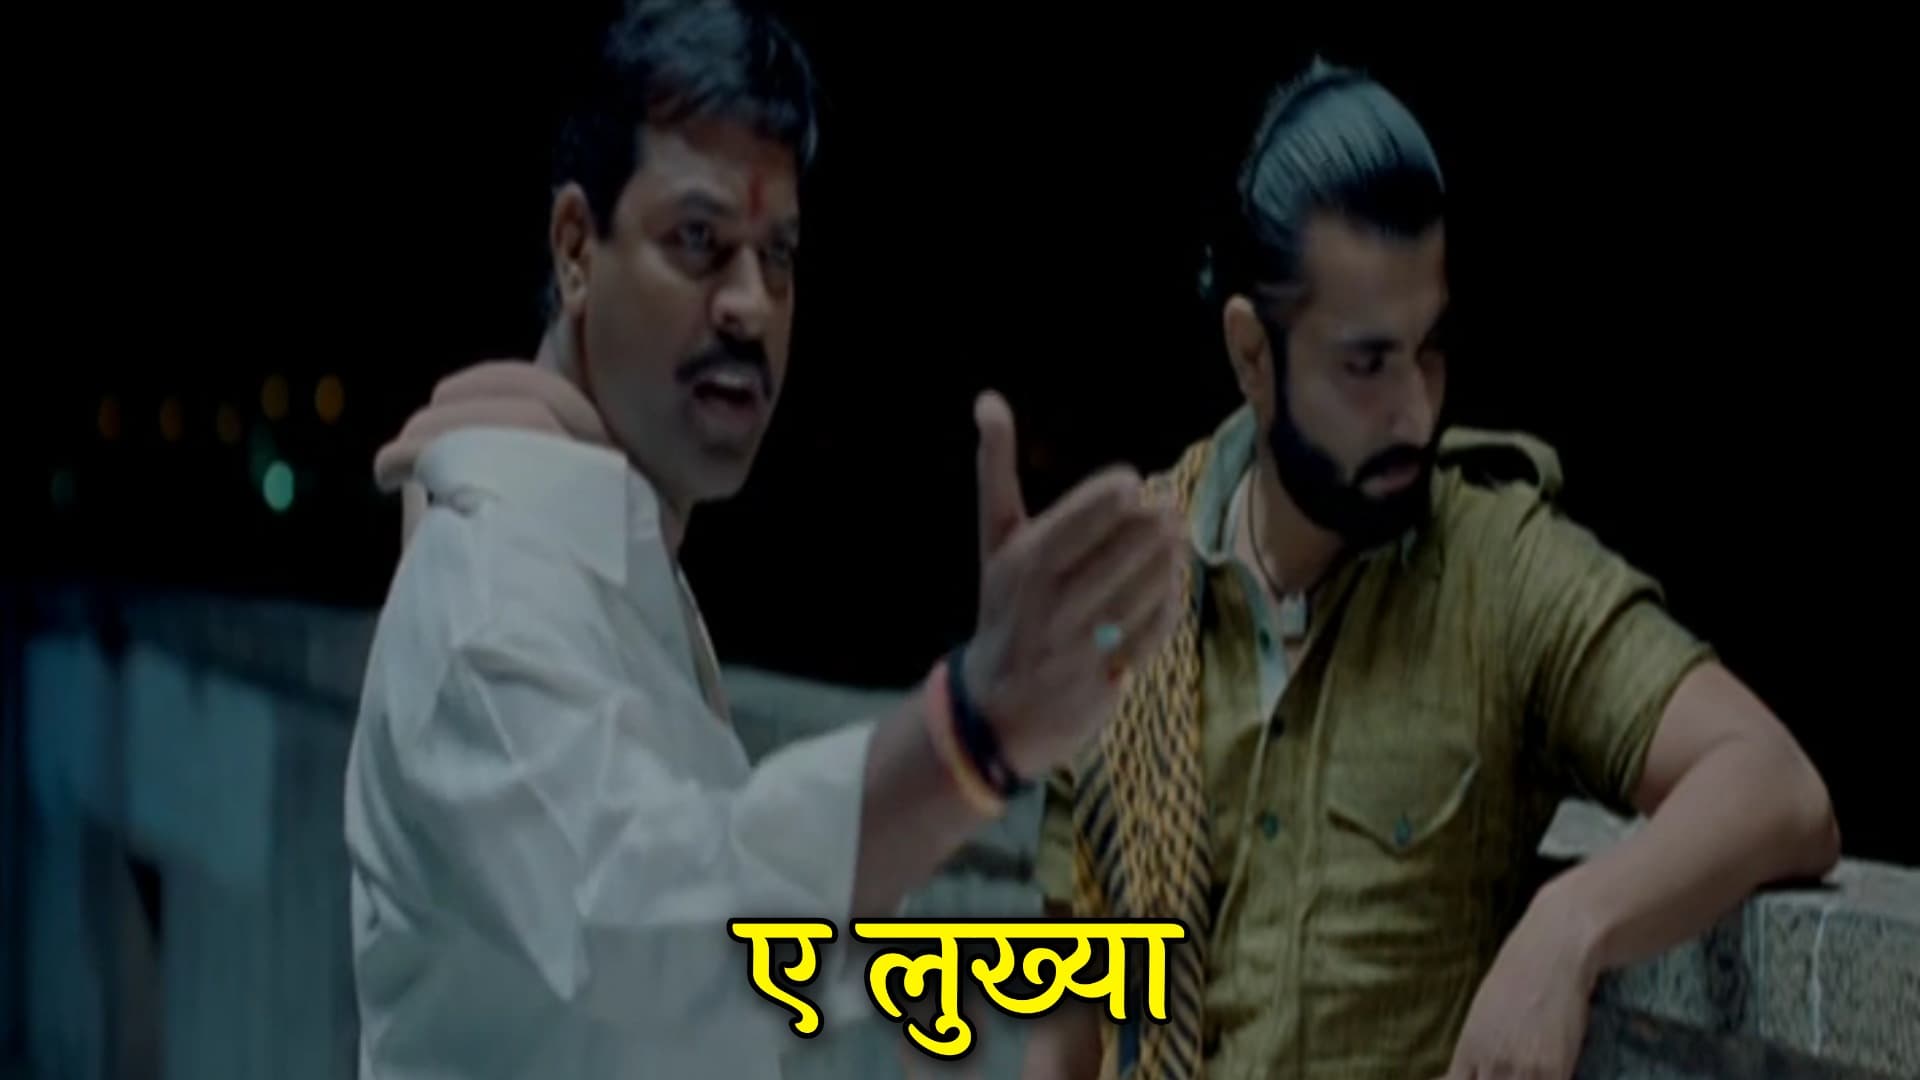 Bharat Jadhav Fakta Ladh Mhana Marathi Movie Meme Template